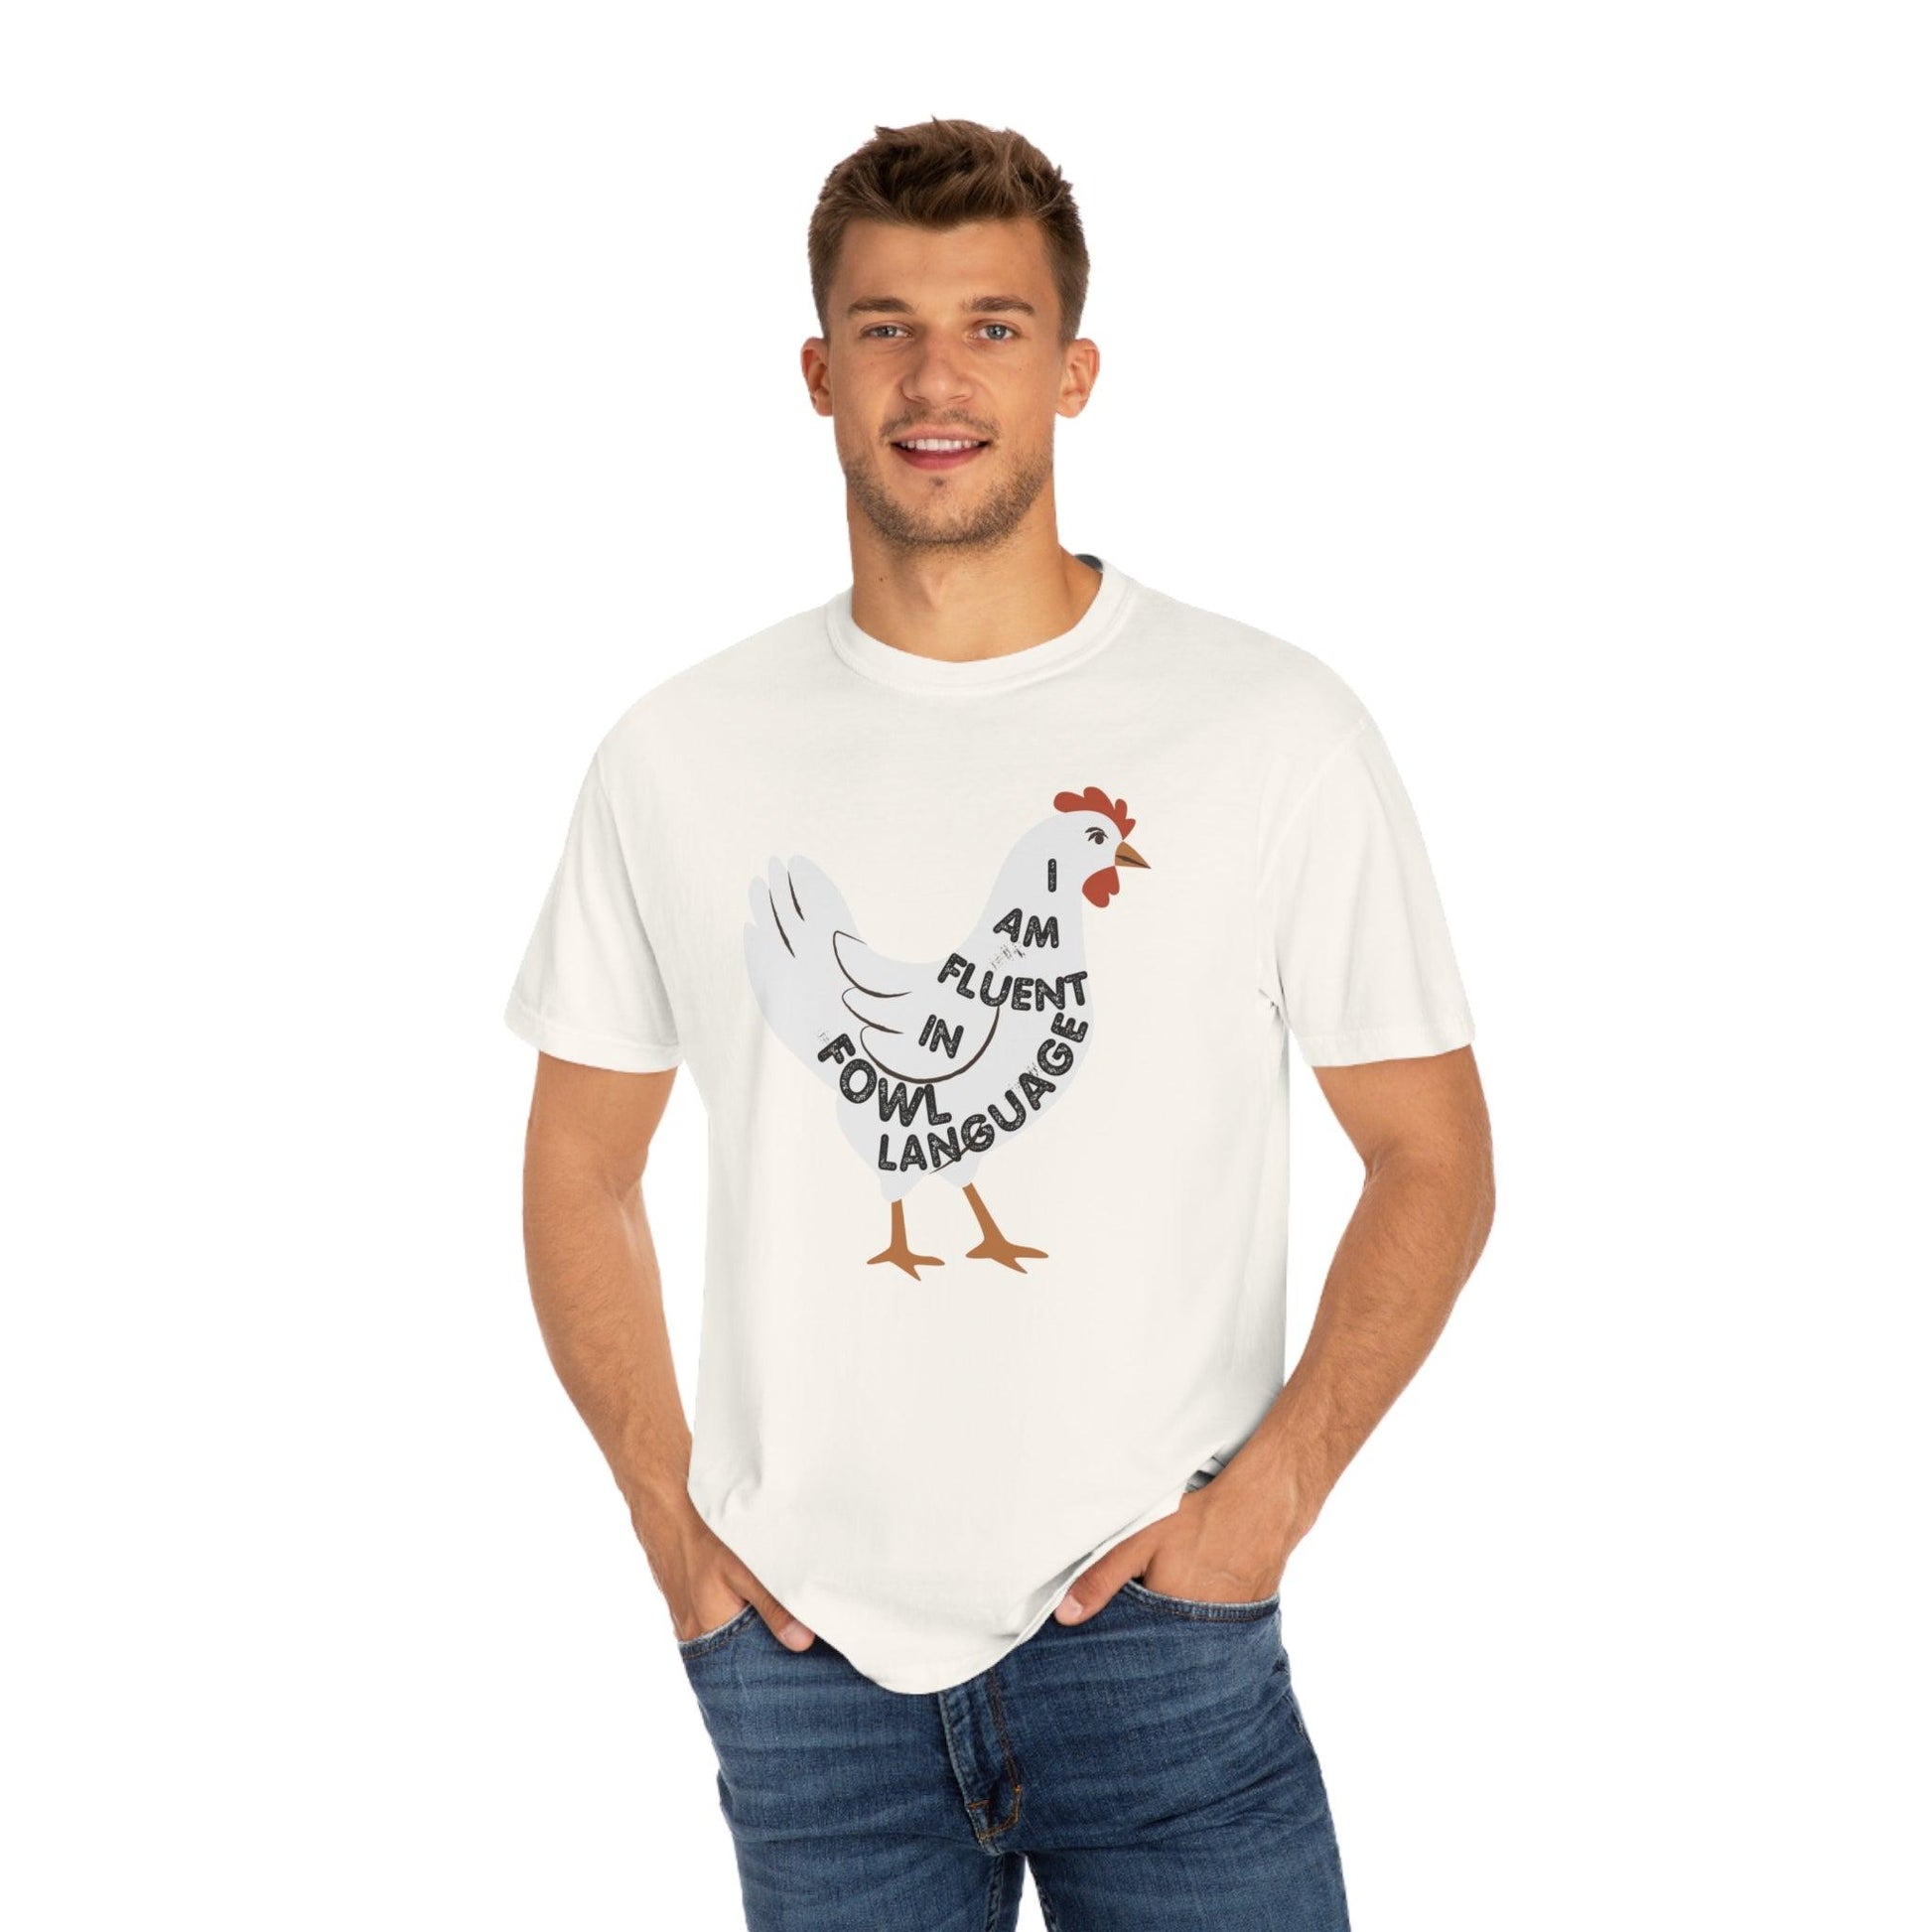 Chicken Shirt Chicken Tee Chicken Owner Gift - Gift For Chicken Lover gift, Fluent in Fowl Language shirt - Giftsmojo